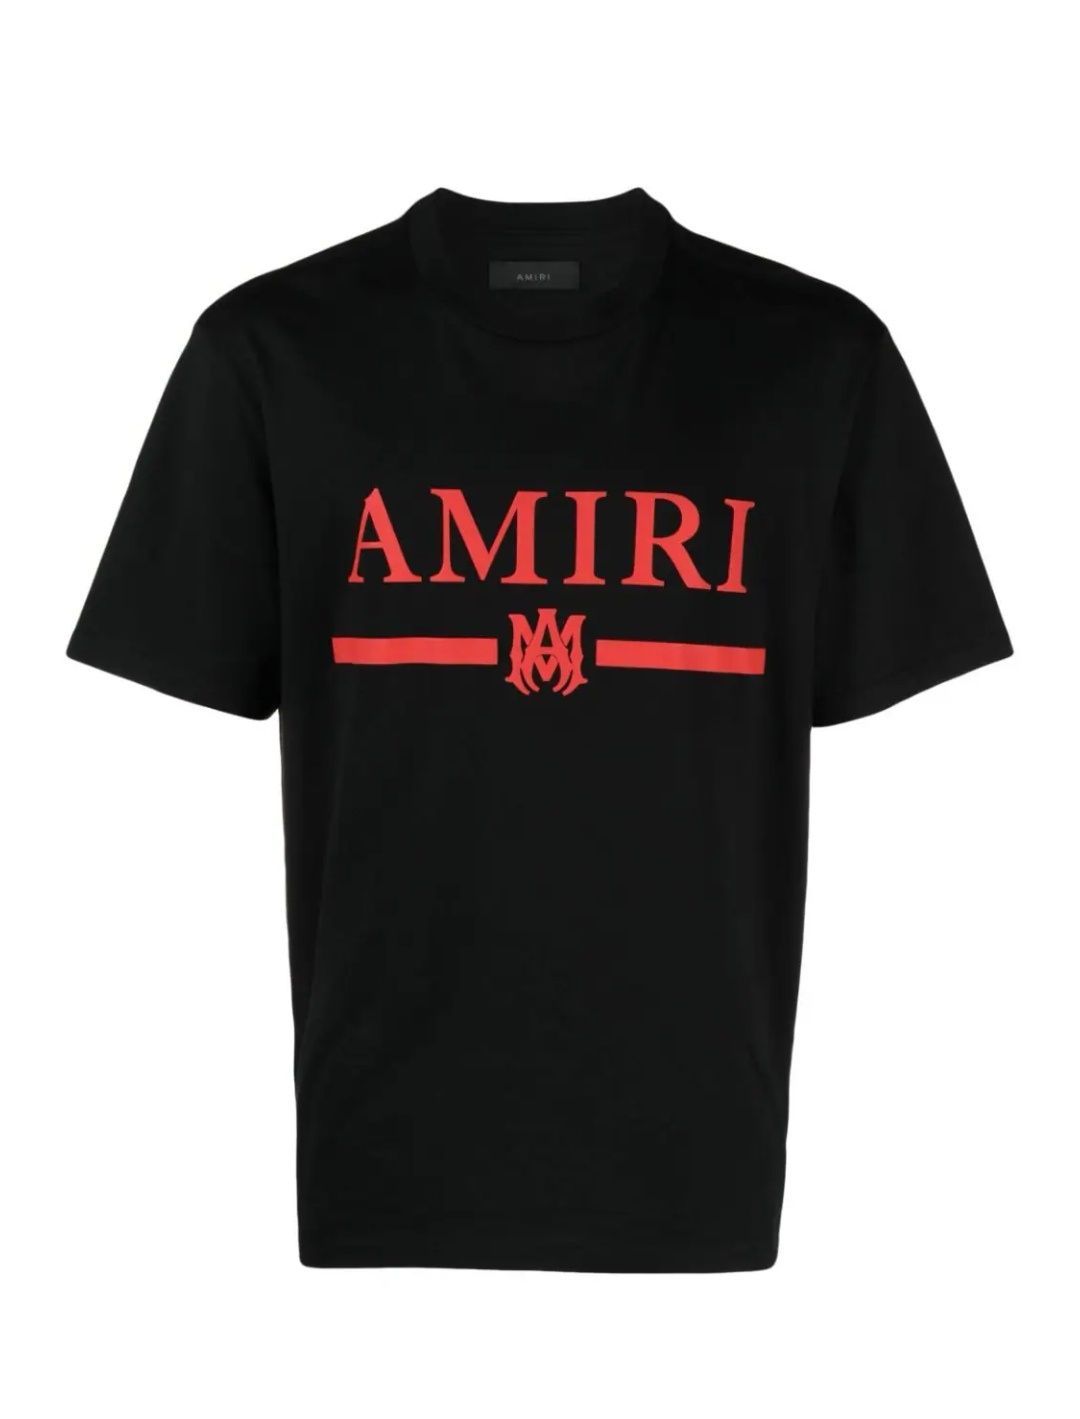 Tricou Amiri, Calitate Premium Bumbac 100 %